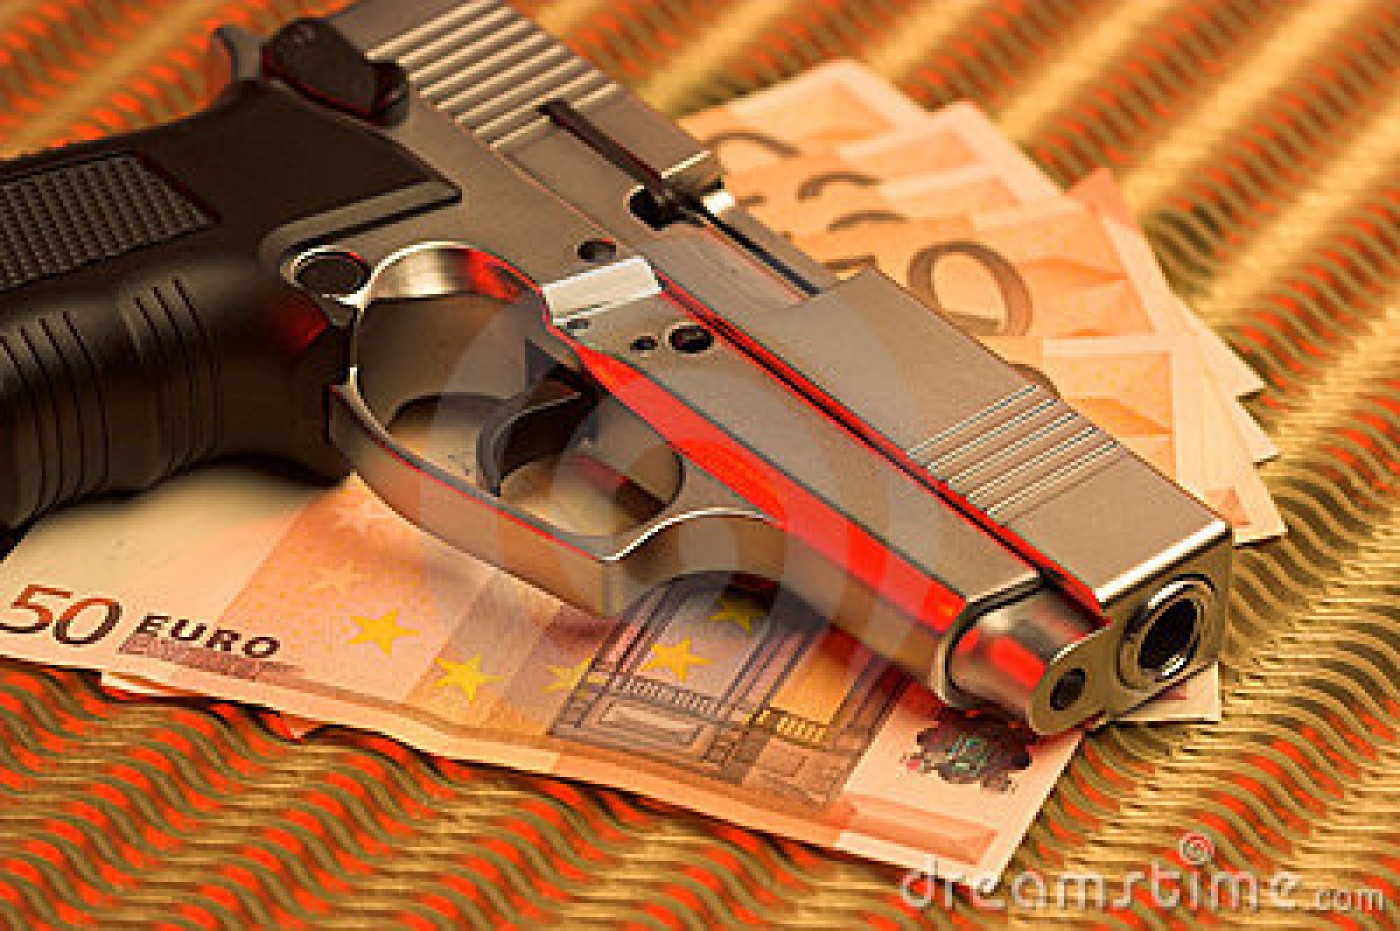 pistol over euro bills 7254402